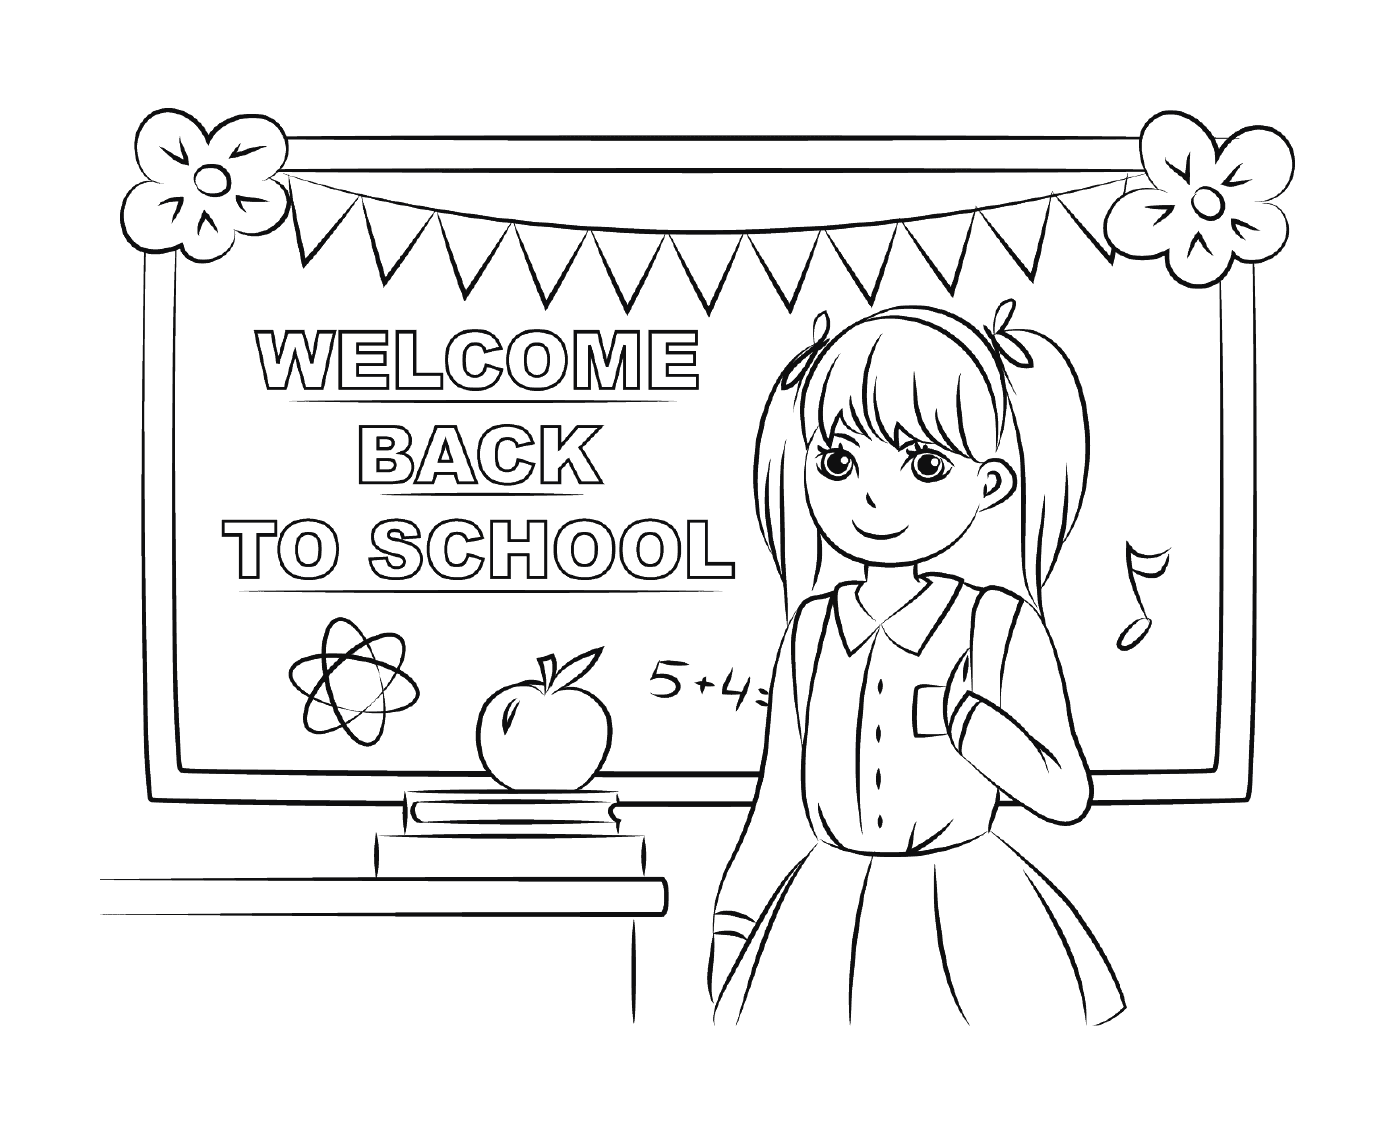  Willkommen zurück in der Schule 